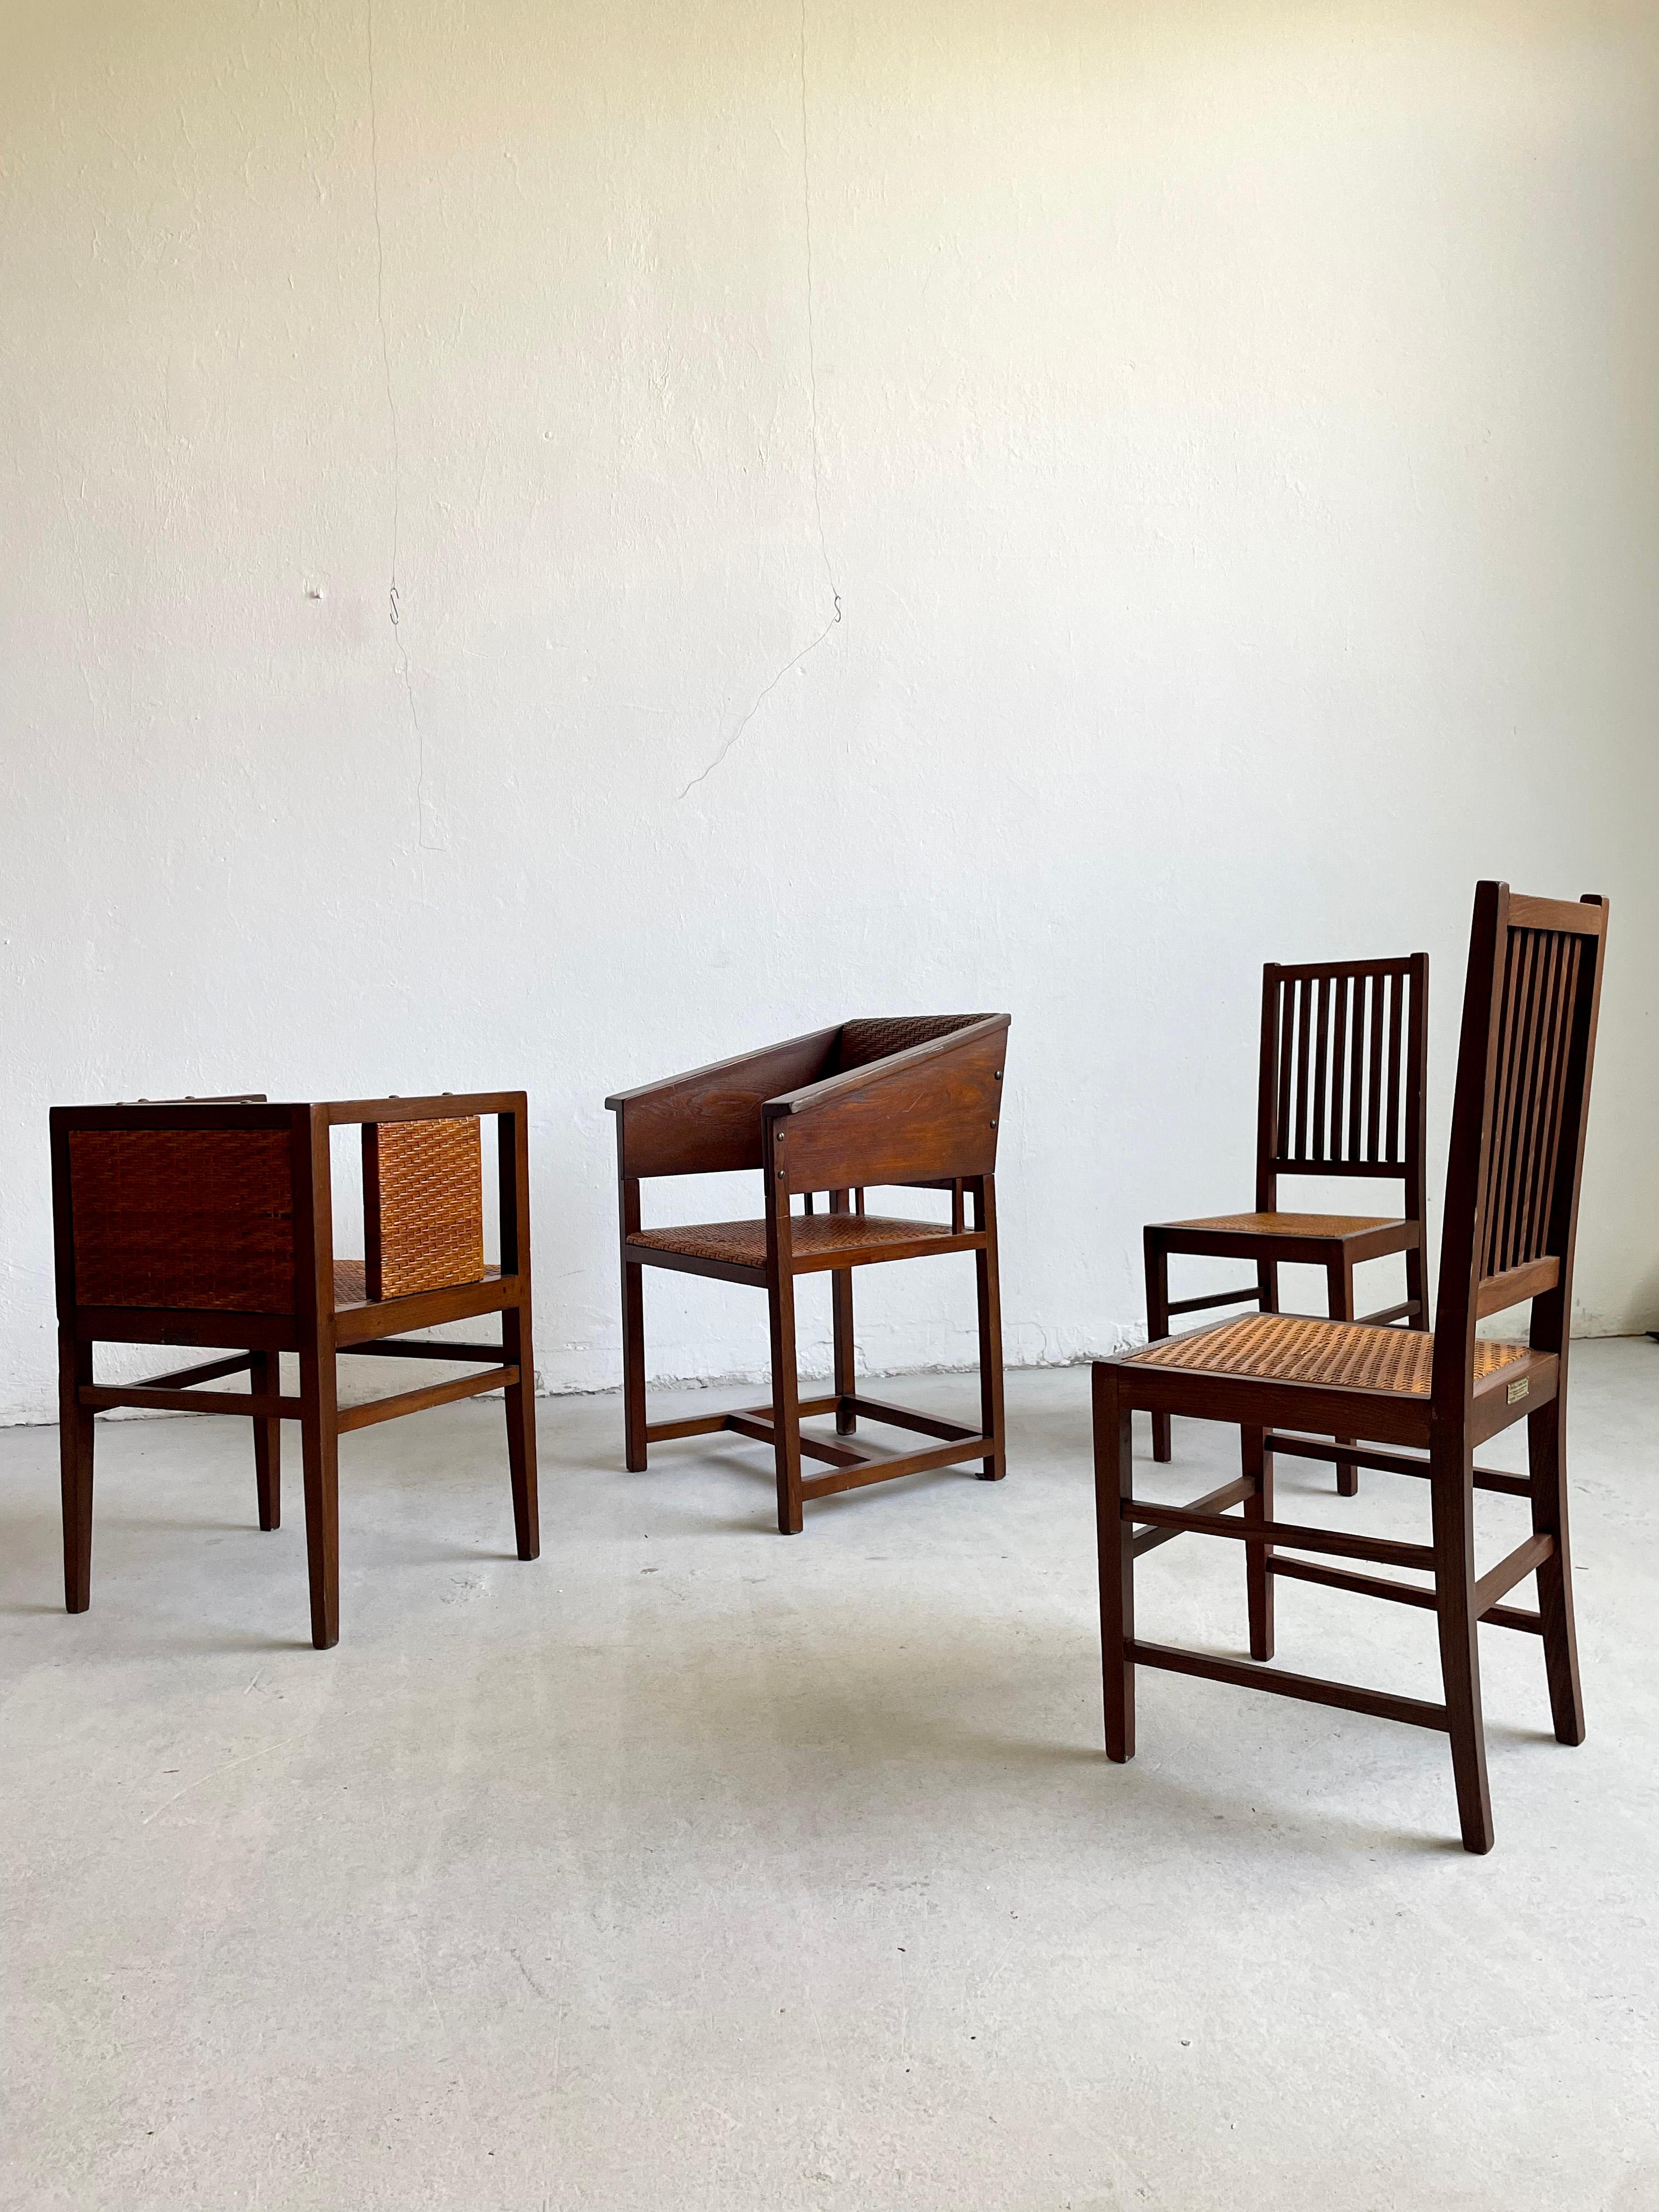 Cet ensemble de 4 chaises fabriquées par Prag-Rudniker Korbfabrikation en 1902 représente une belle collection de qualité muséale d'un design important de la Sécession viennoise. 

La collection comprend une chaise en chêne teinté et en rotin Mod.